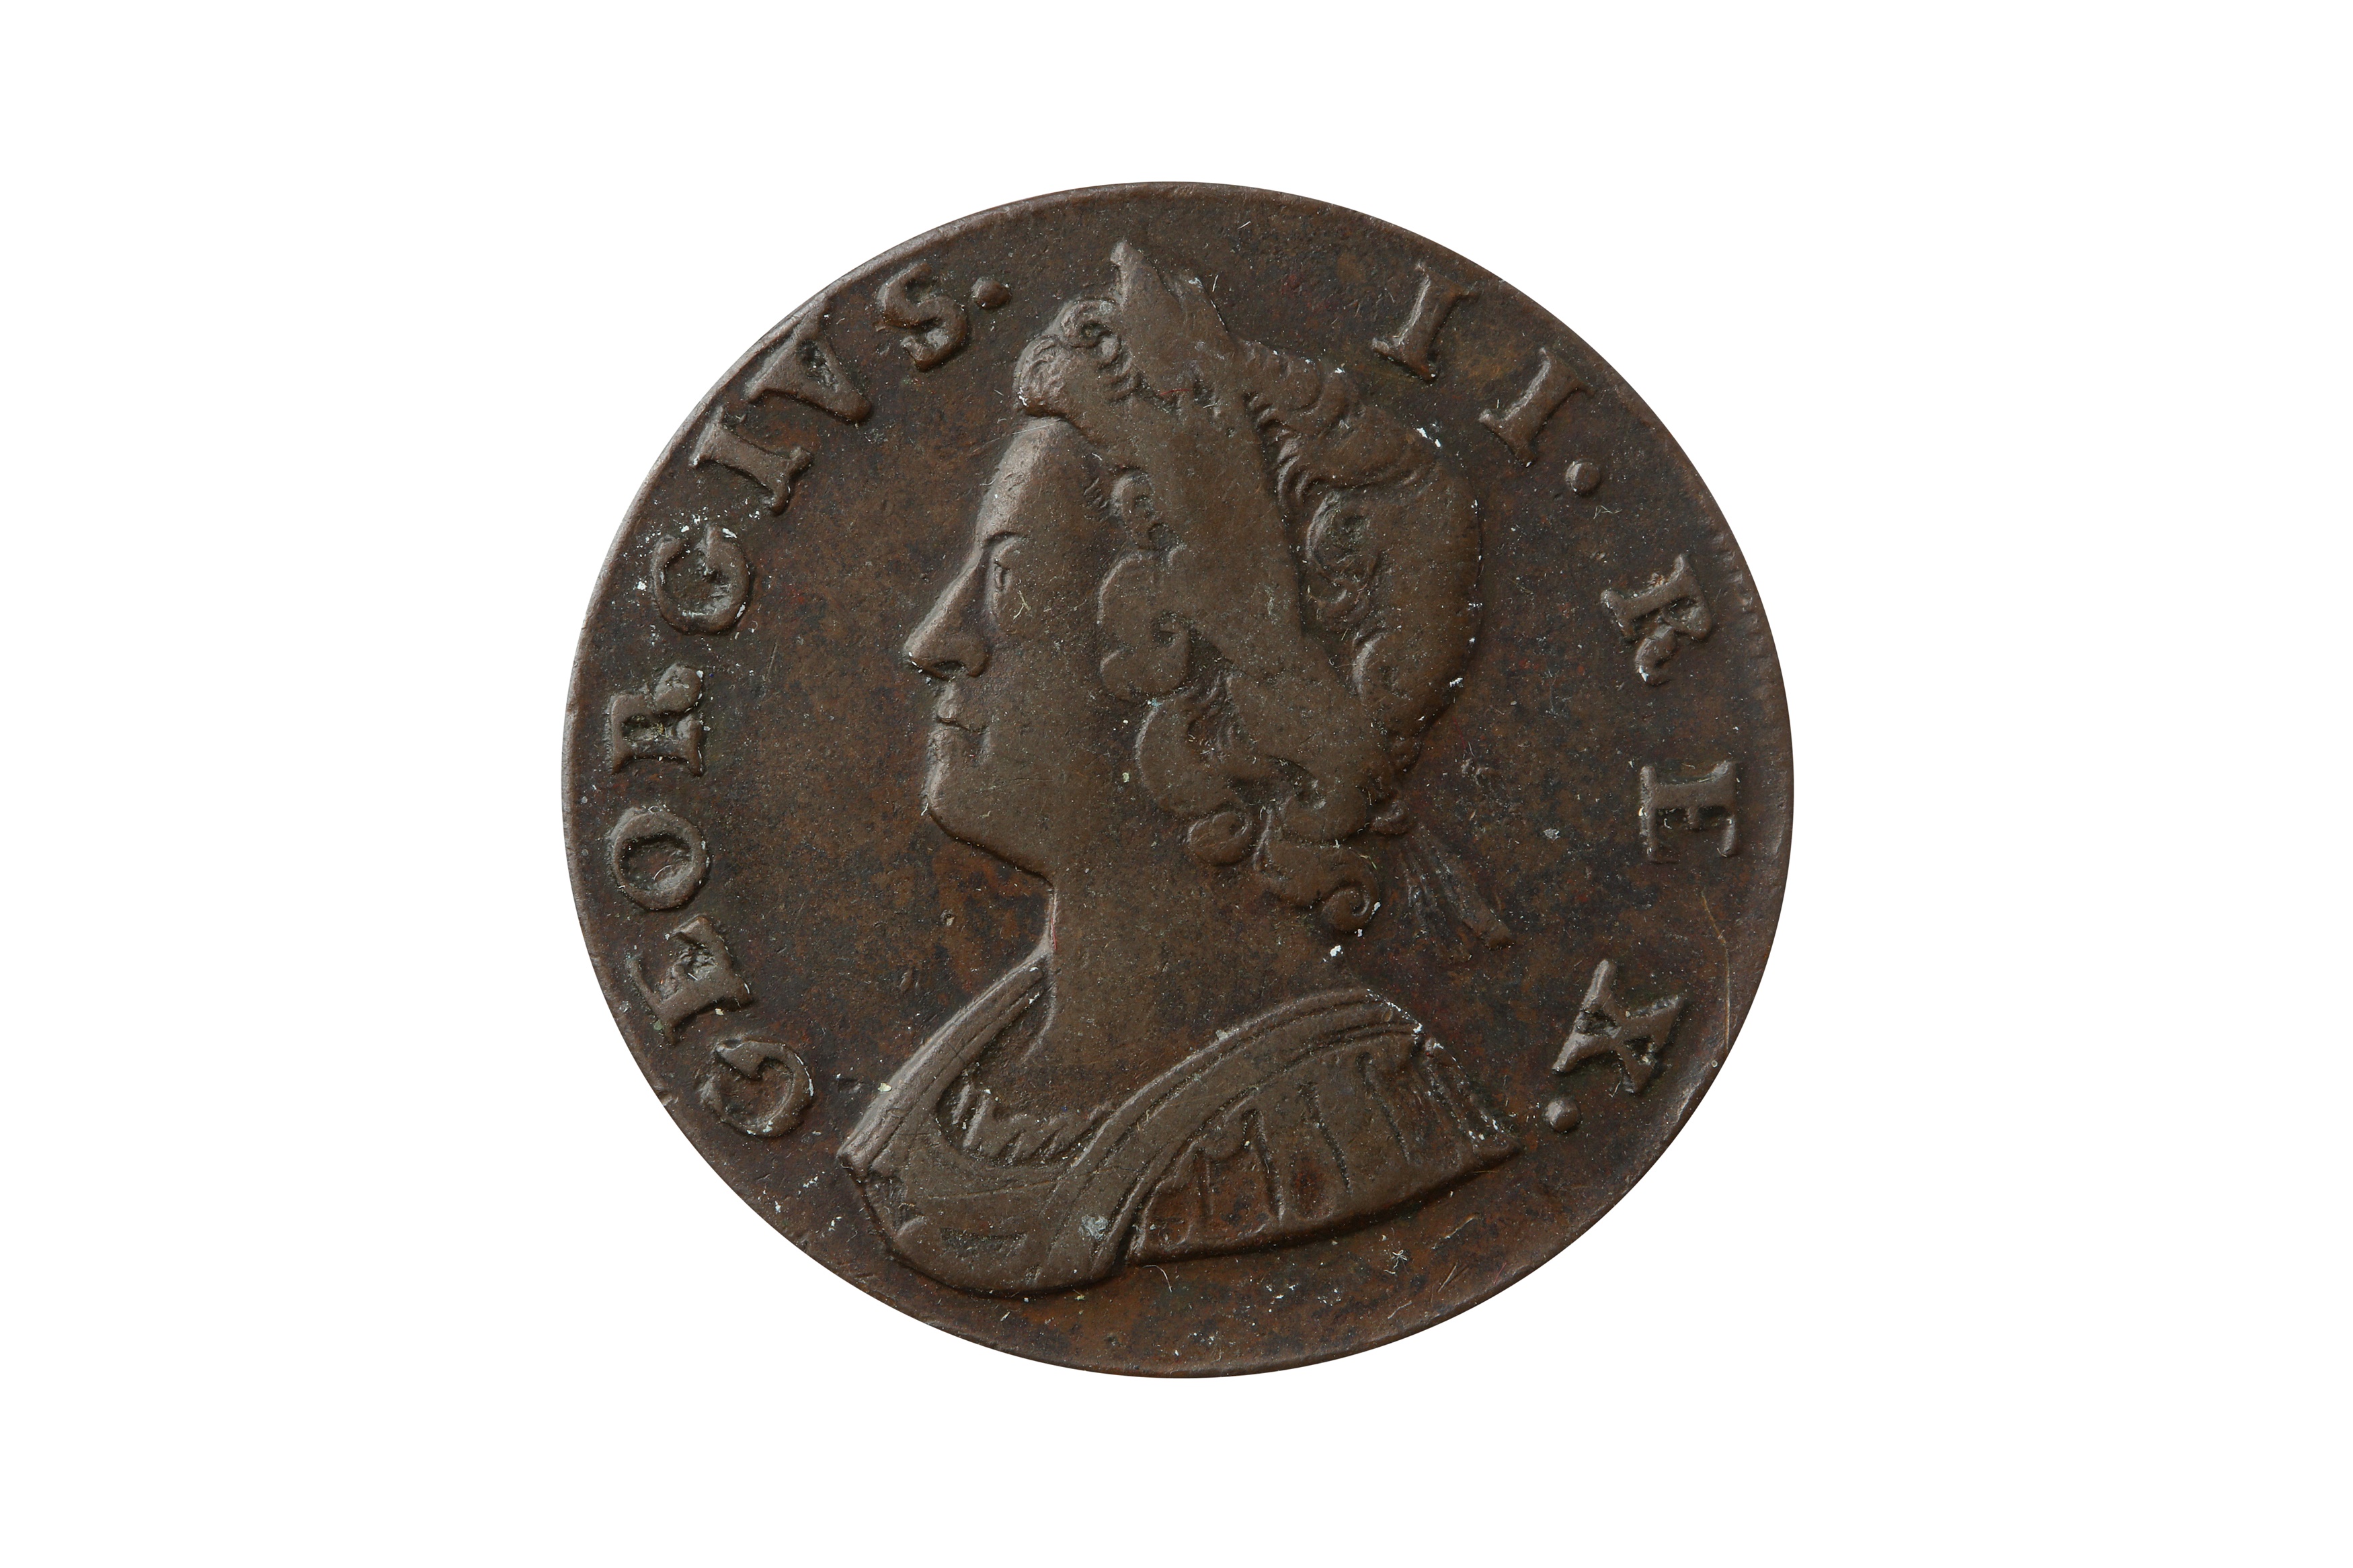 GEORGE II (1727 - 1760), 1734 HALFPENNY.